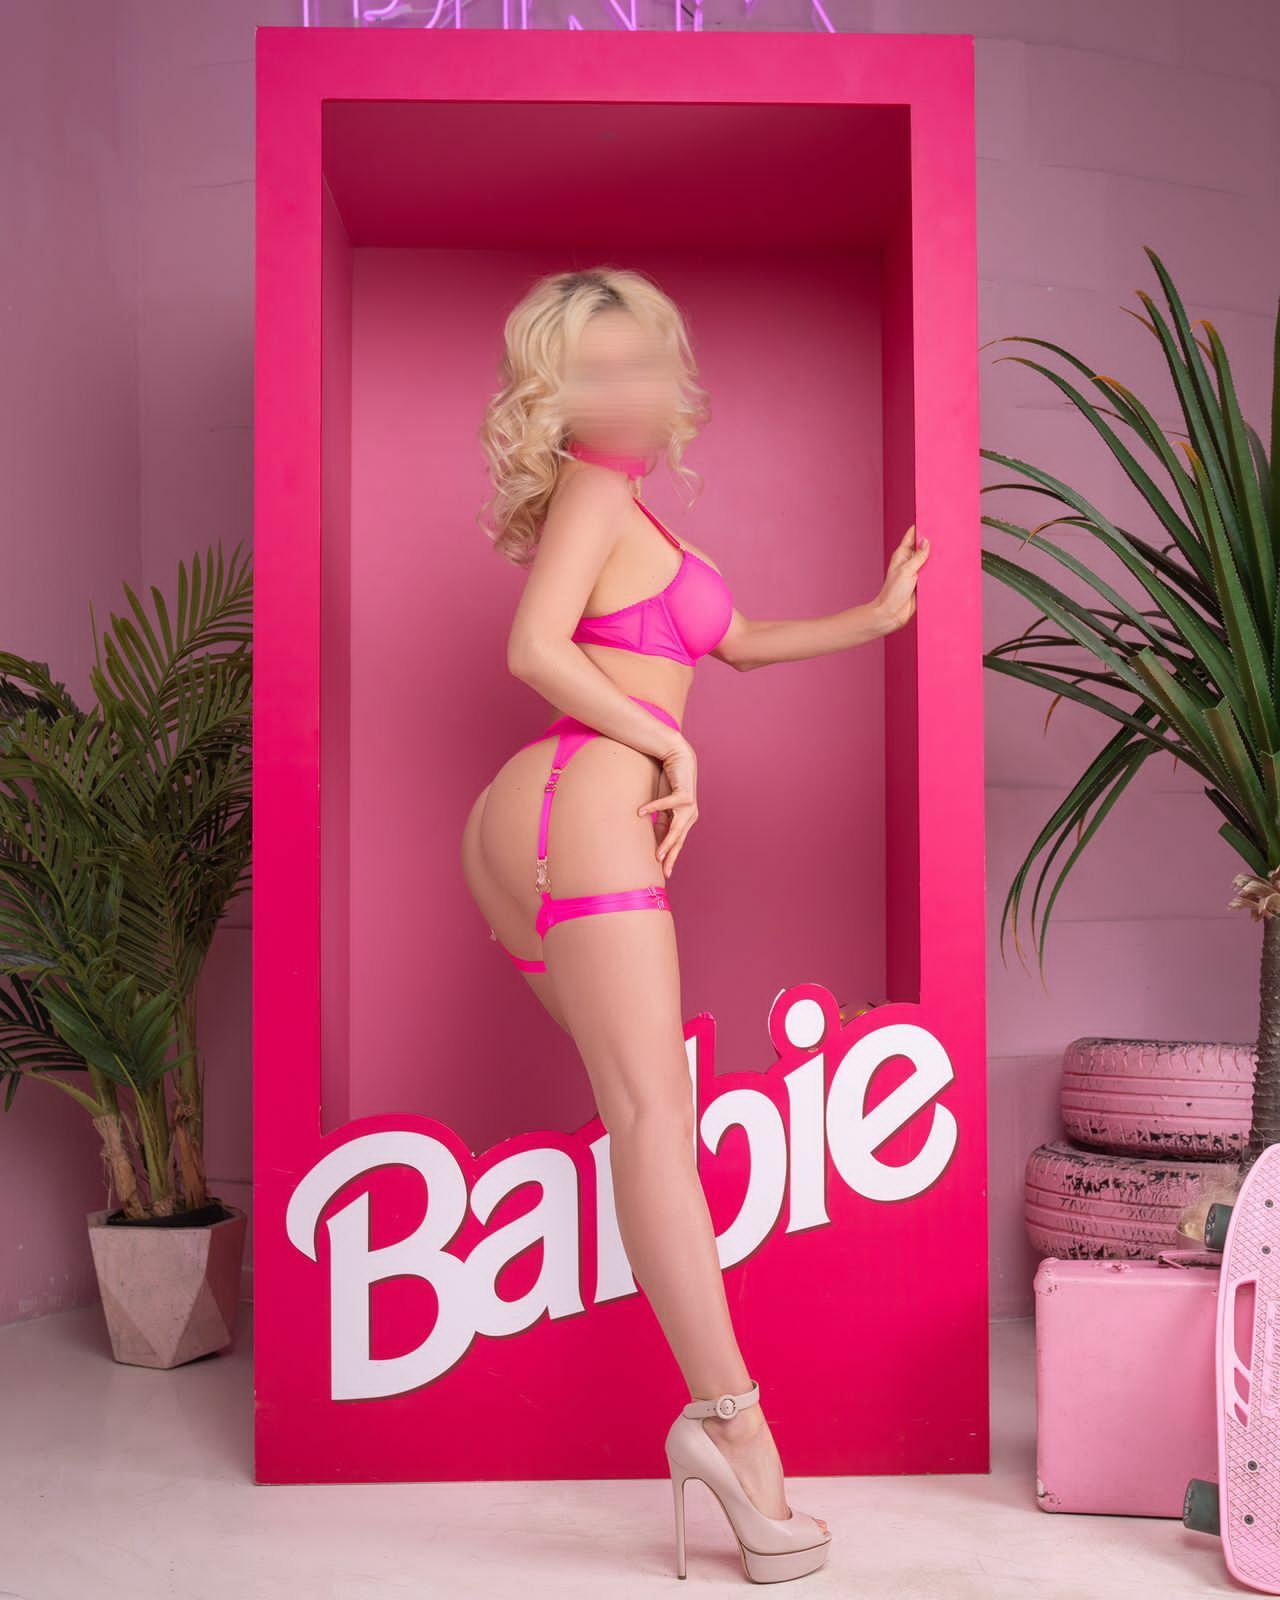 Проститутка Barbie стройная исполнит эскорт и пригласит к себе